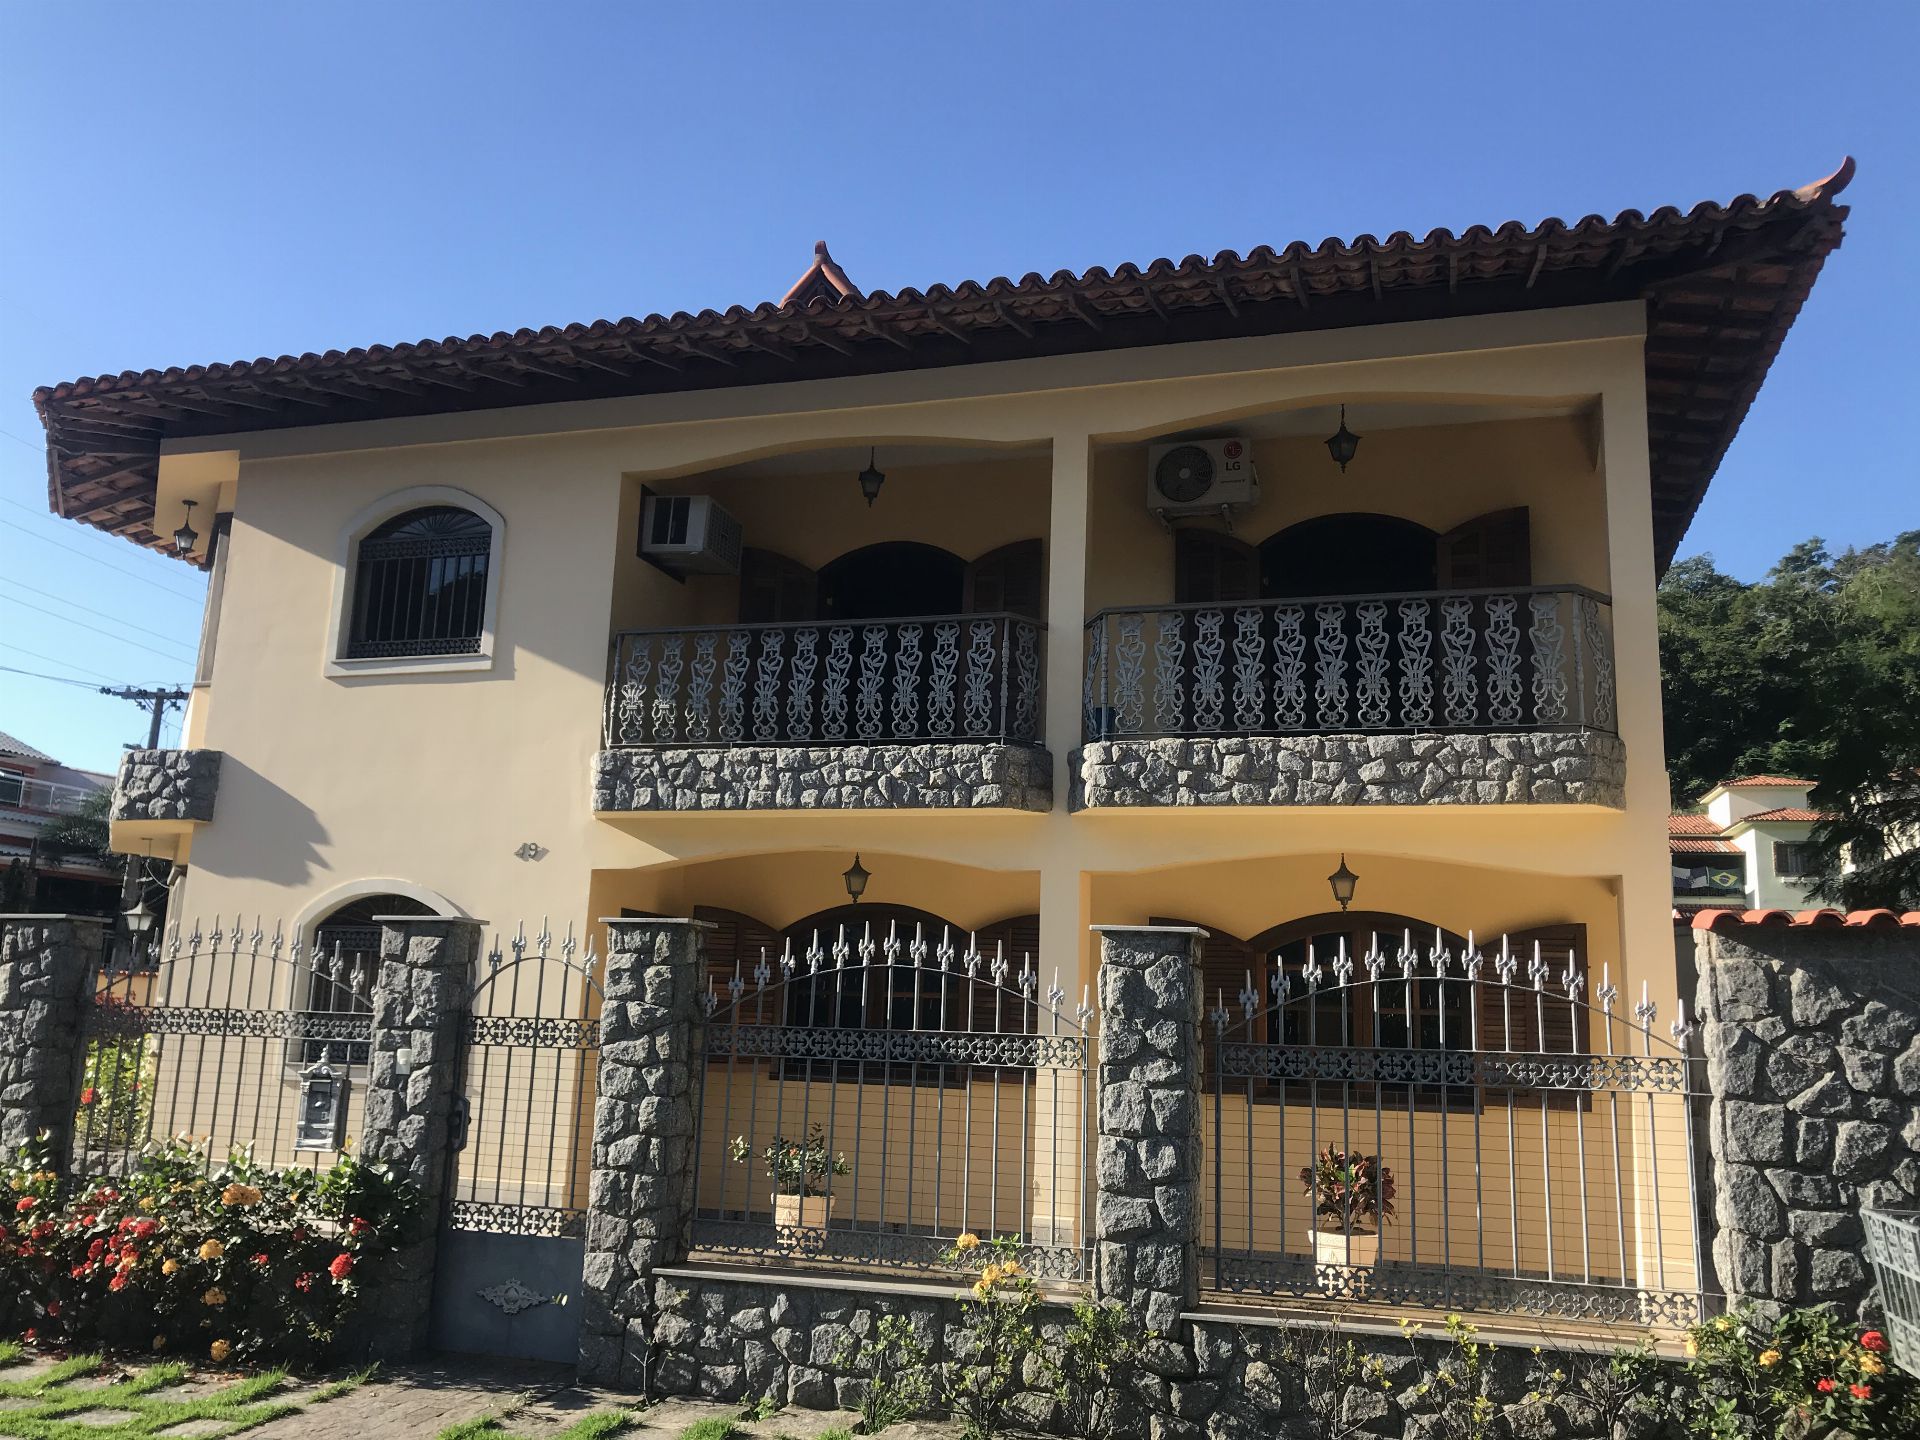 FOTO 1 - Casa em Condomínio 4 quartos à venda Vila Valqueire, Rio de Janeiro - R$ 1.600.000 - RF205 - 1